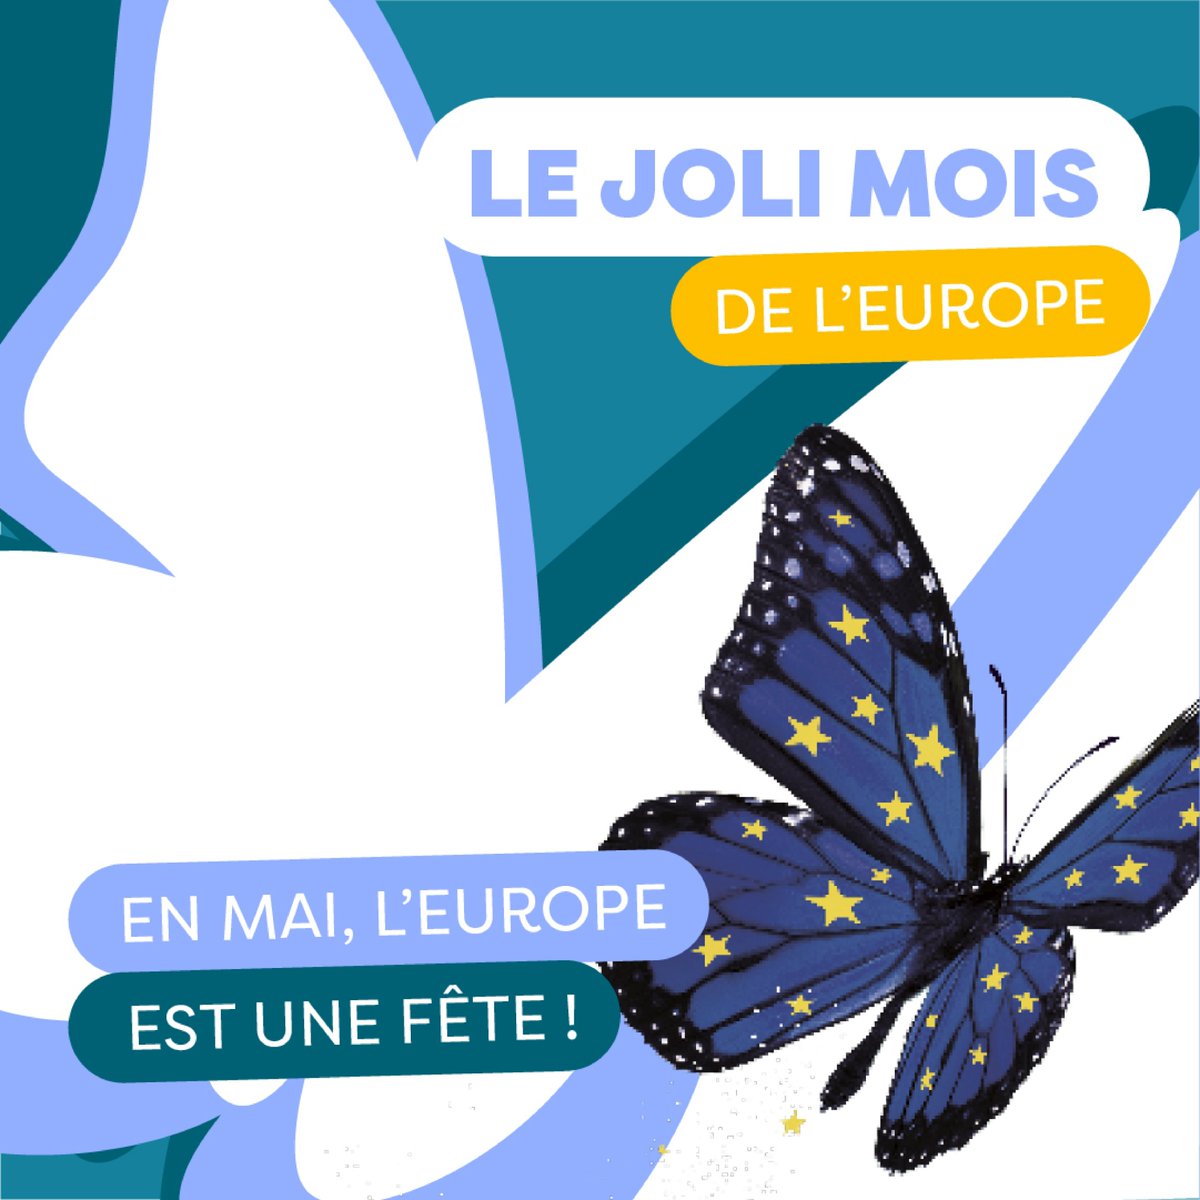 🇪🇺 Joyeuse Fête de l'Europe ! 🇪🇺 
Le 9 mai célèbre la Déclaration Schuman de 1950, fondatrice de l'UE. 
Rejoignez-nous ce mois-ci pour le Joli Mois de l'Europe ! 
Découvrez et participez à des événements inspirants : 
urlz.fr/qcEx 
#UEHDF #JMEurope #EUinmyregion